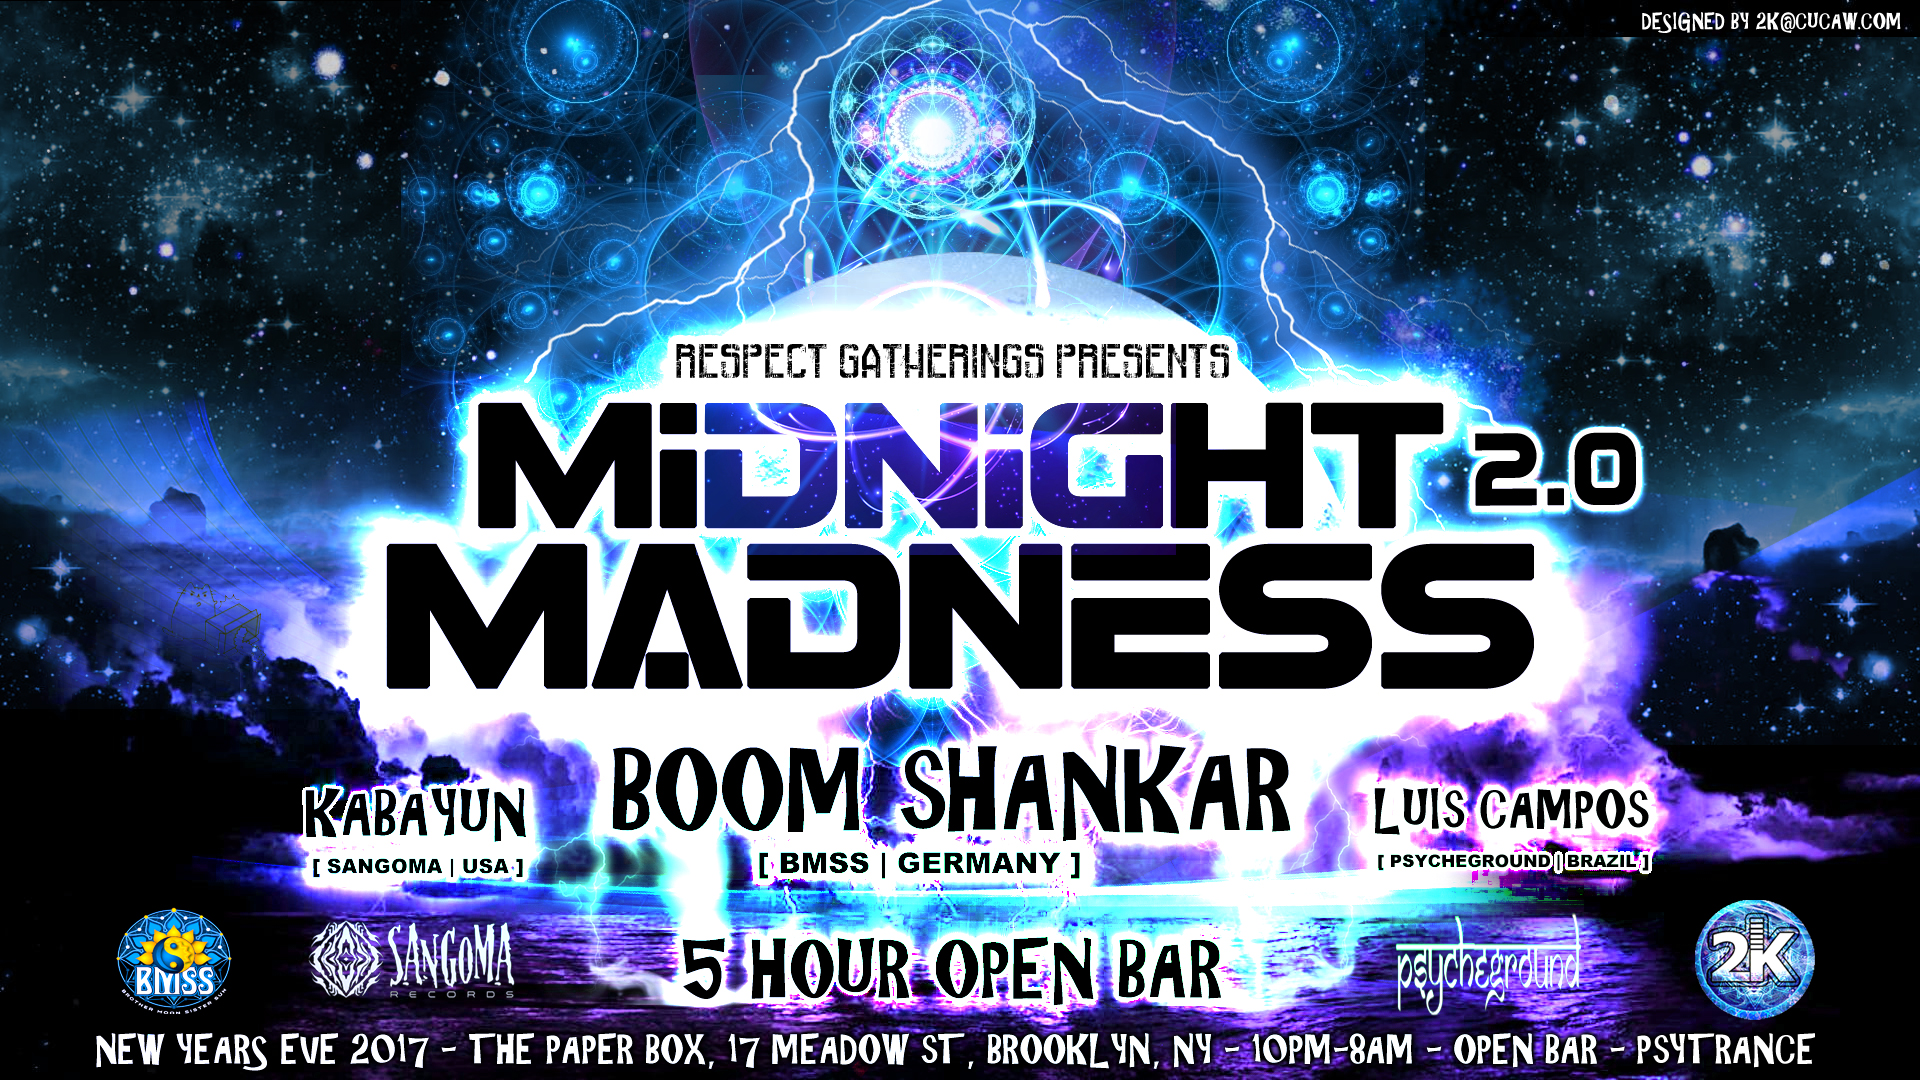 Midnight Madness 2.0